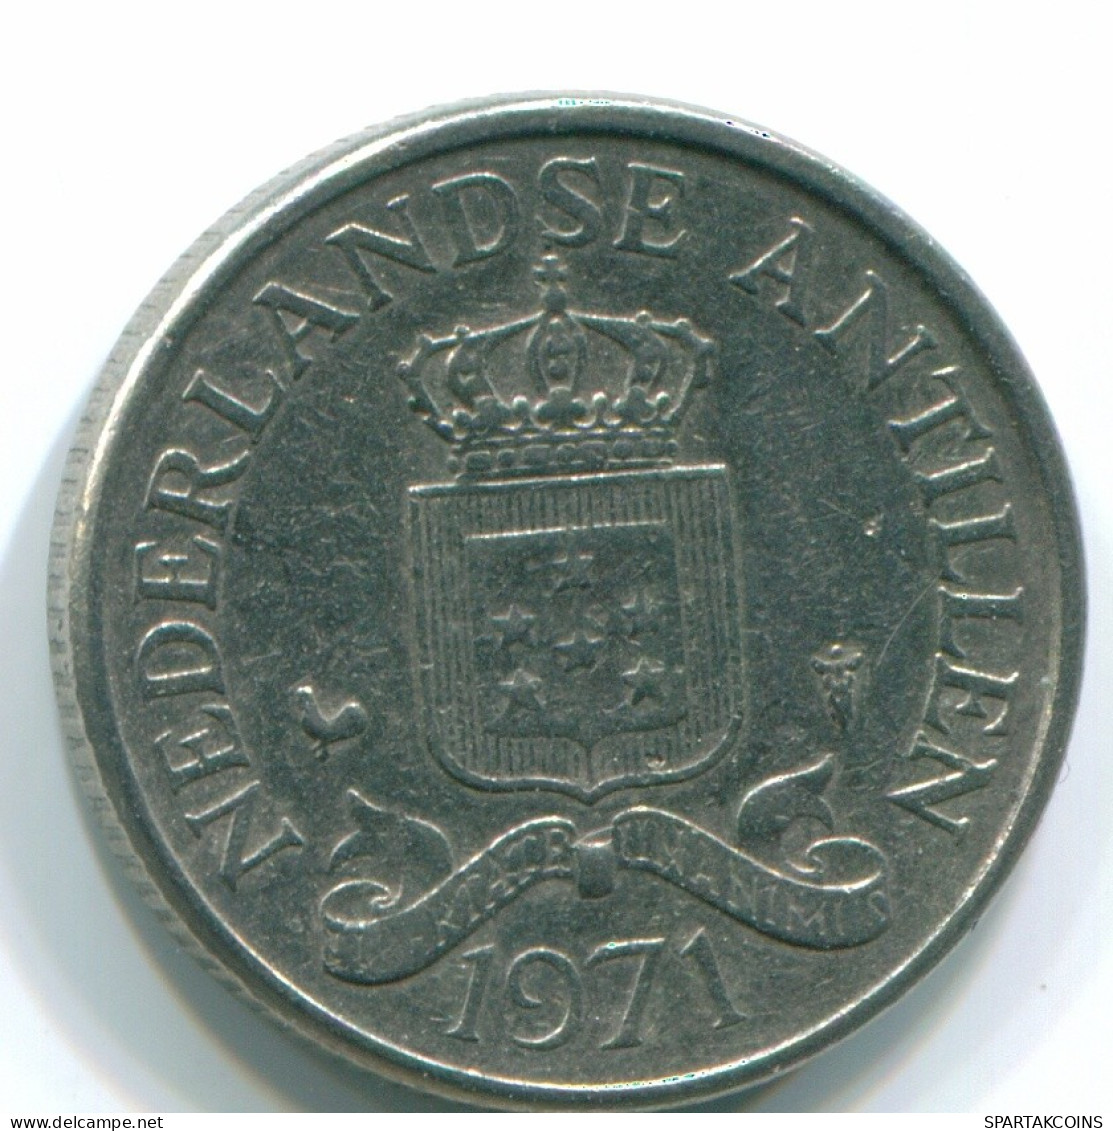 25 CENTS 1971 NIEDERLÄNDISCHE ANTILLEN Nickel Koloniale Münze #S11565.D.A - Antille Olandesi